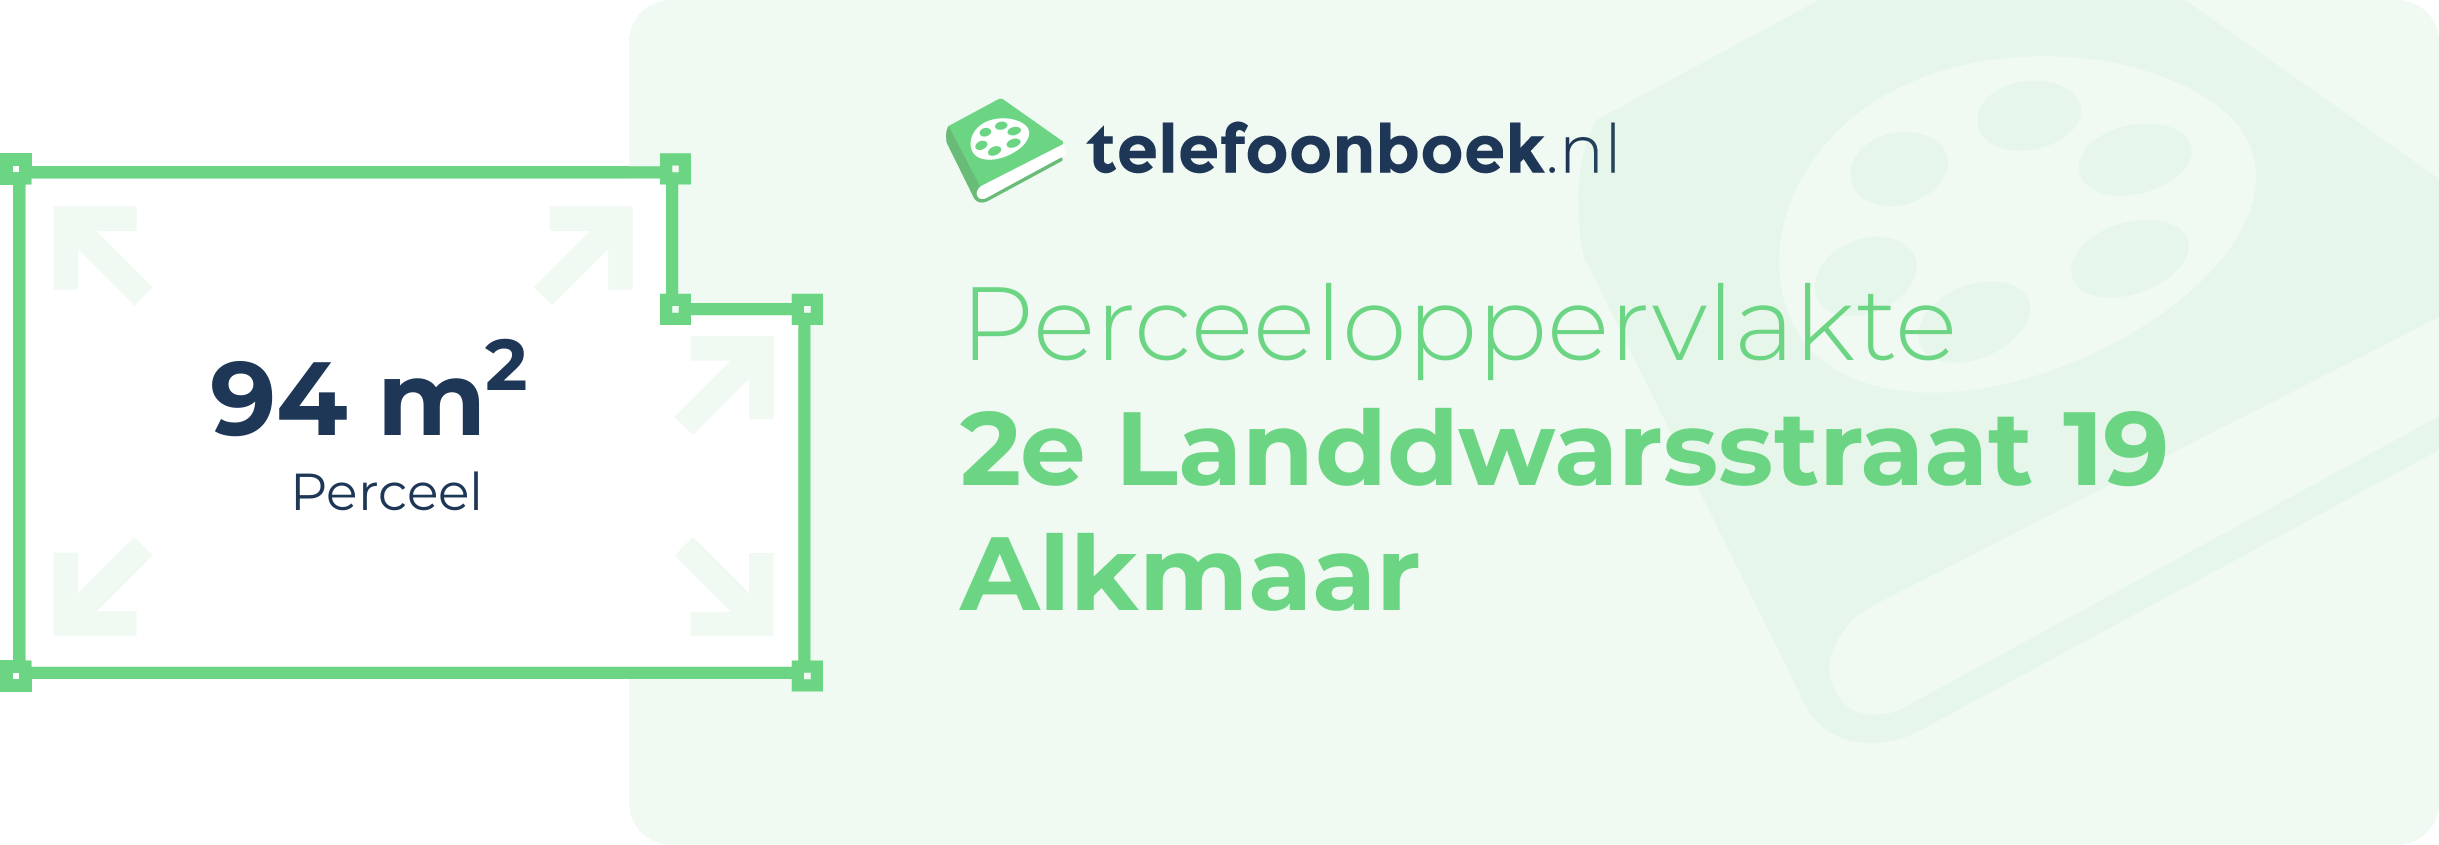 Perceeloppervlakte 2e Landdwarsstraat 19 Alkmaar